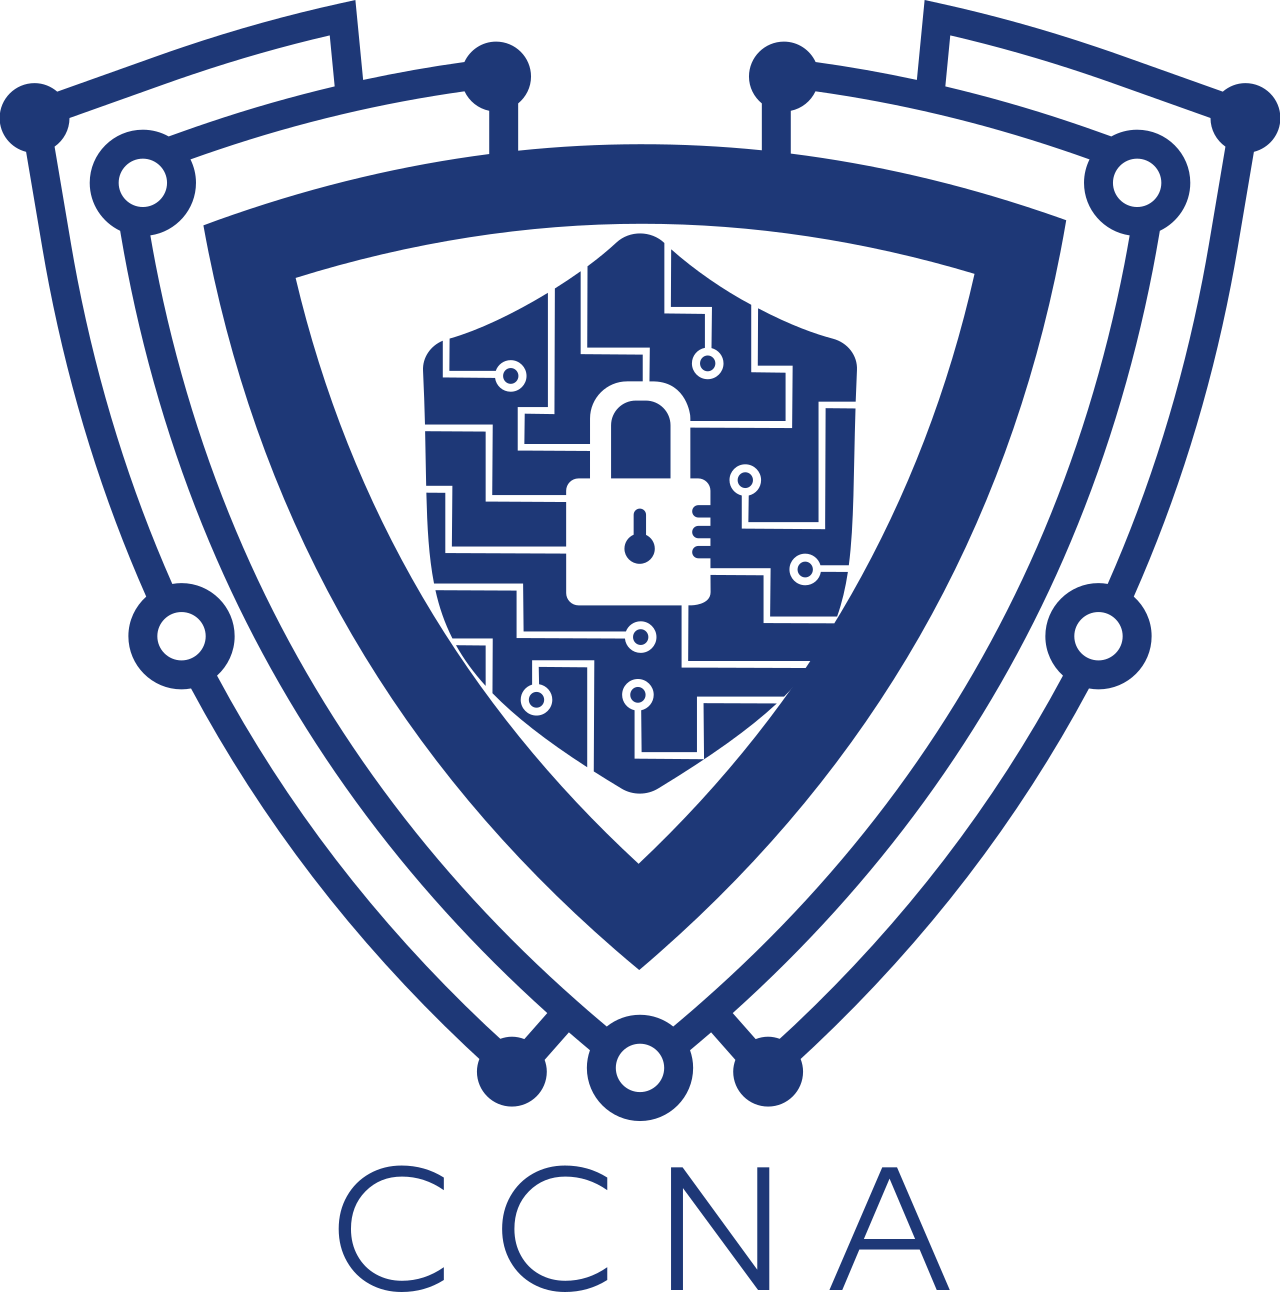 CCNA's logo